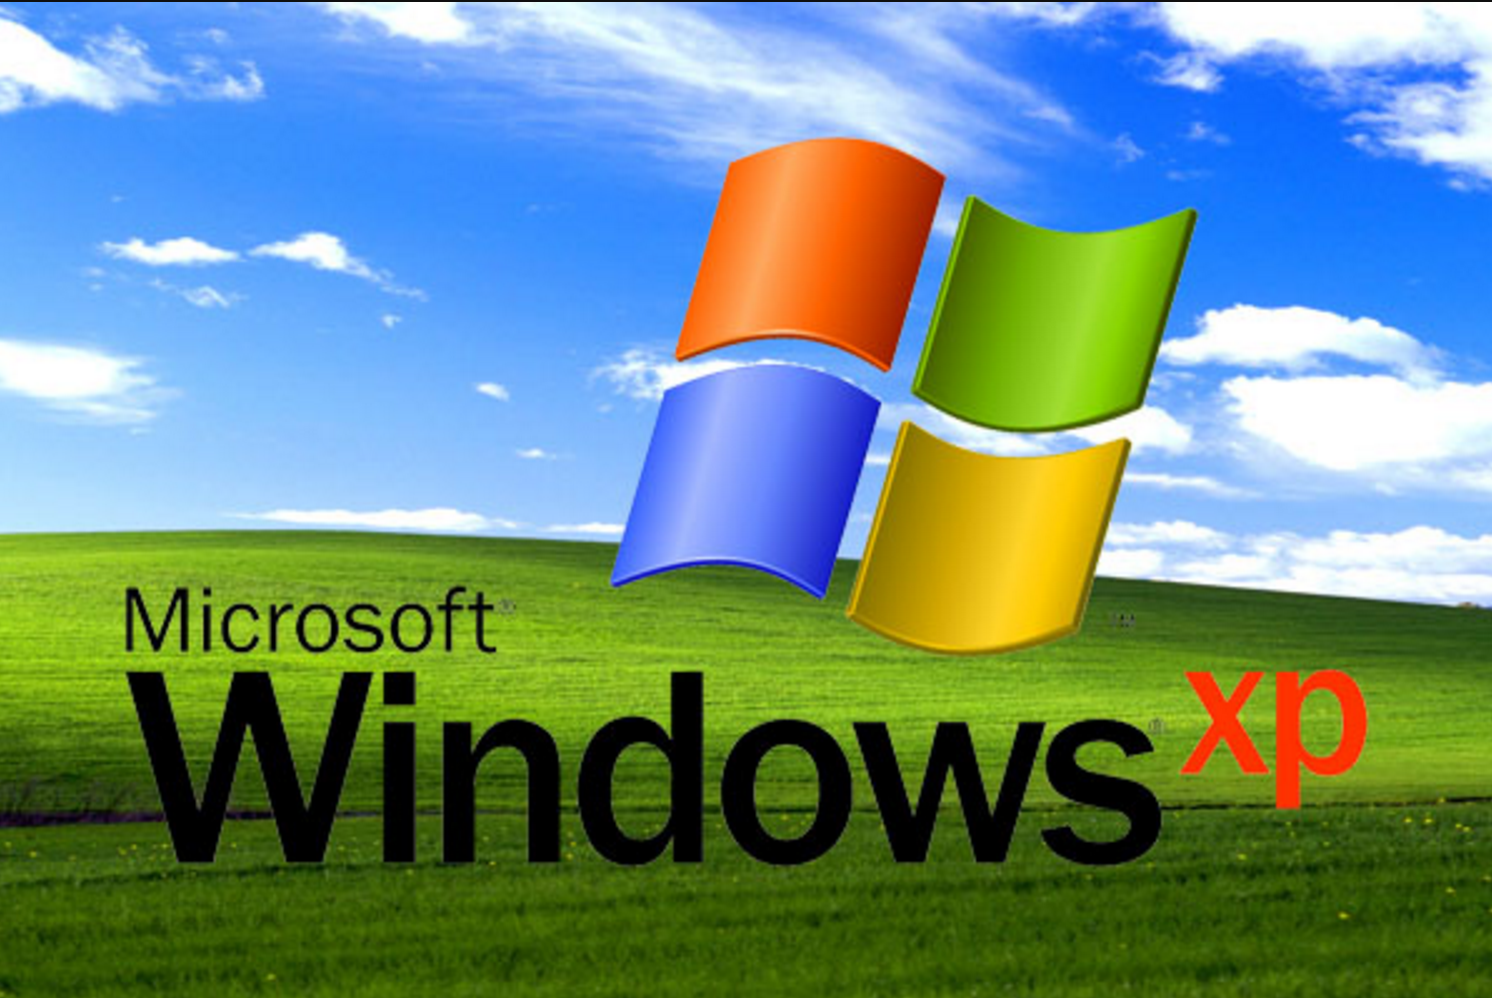 Xp final. Виндовс XP. Логотип Windows XP. ОС Microsoft Windows. Операционная система Windows XP.